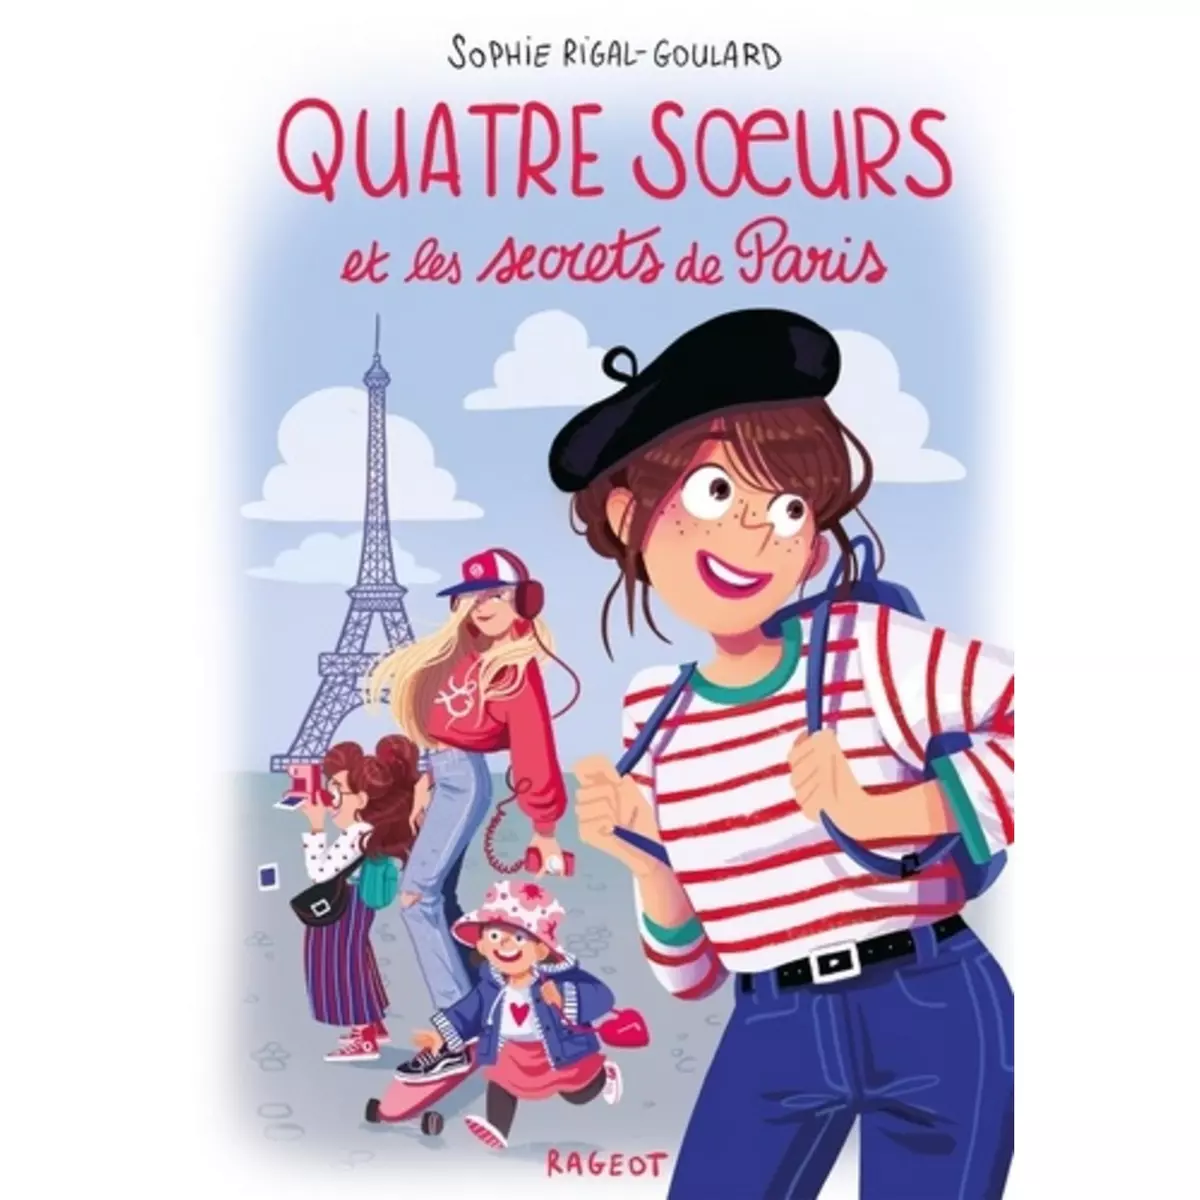  QUATRE SOEURS : QUATRE SOEURS ET LES SECRETS DE PARIS, Rigal-Goulard Sophie